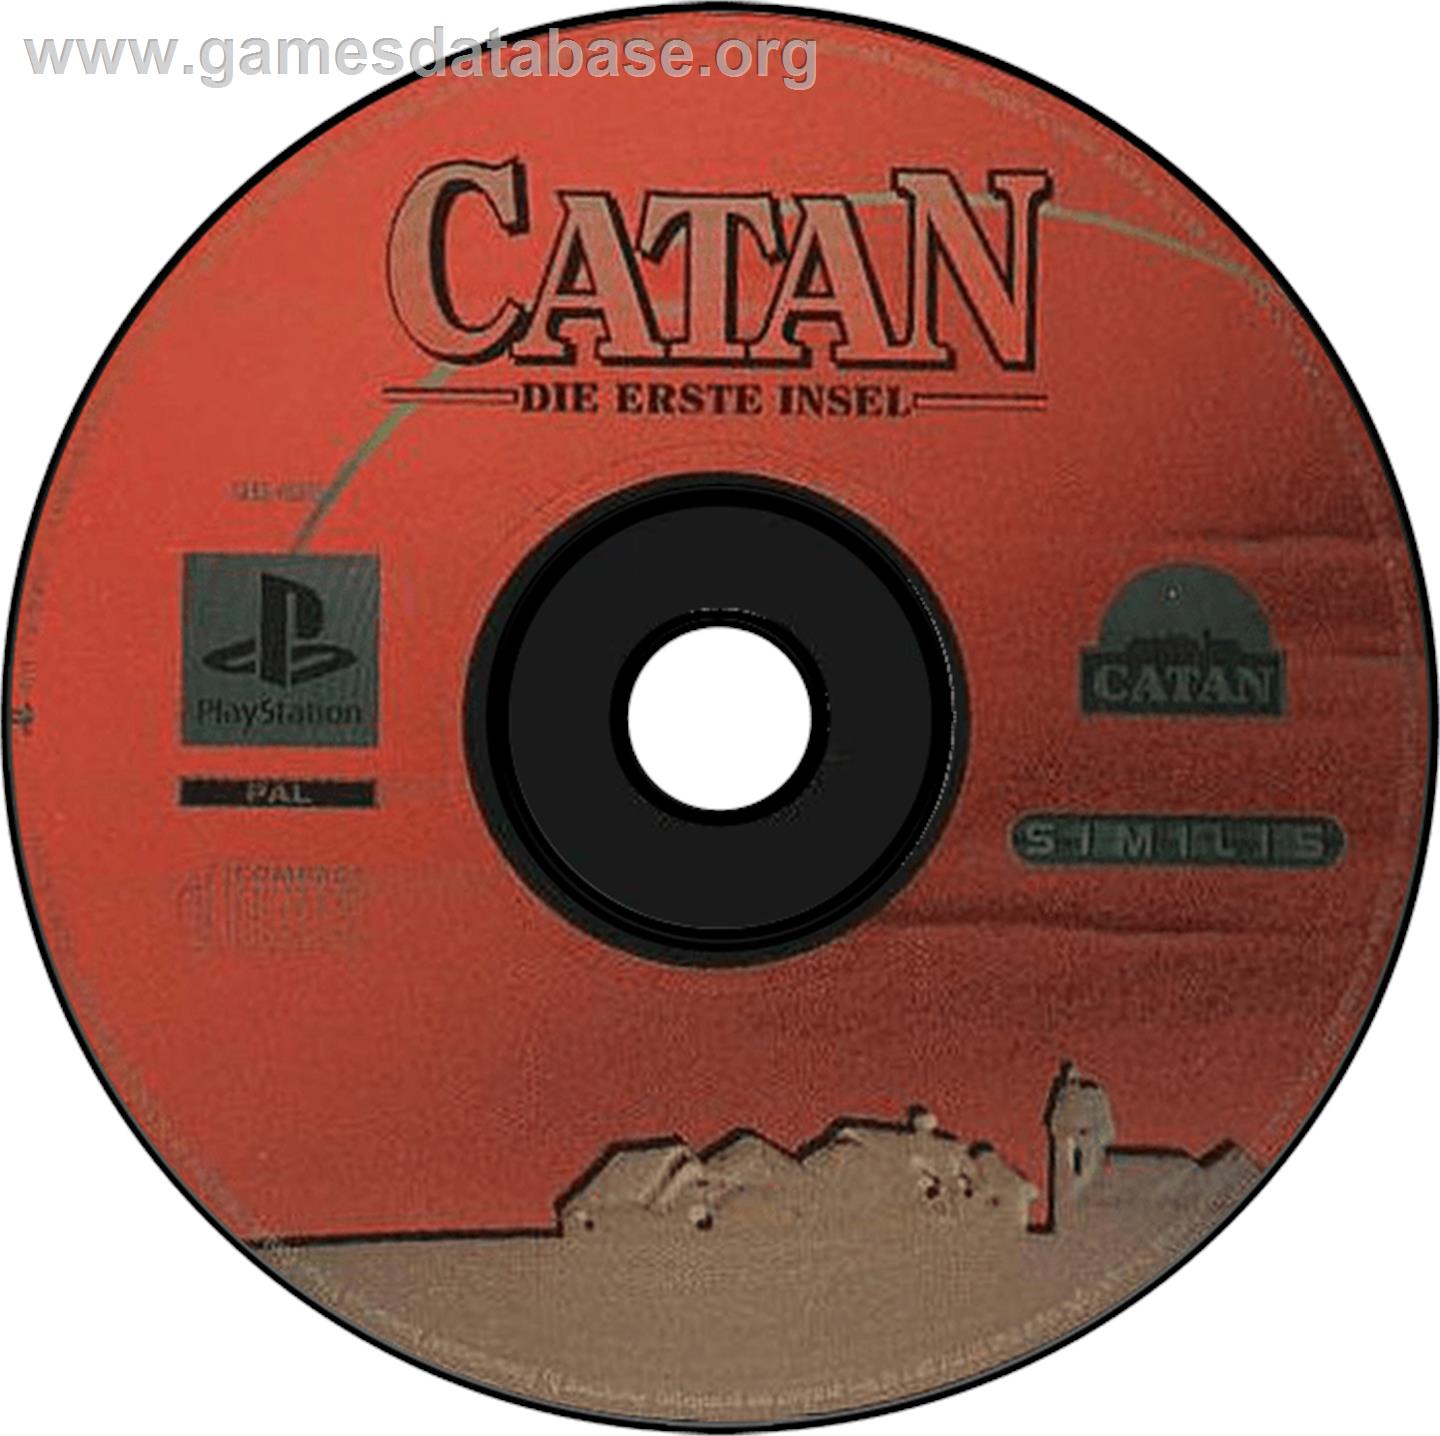 Catan: Die Erste Insel - Sony Playstation - Artwork - Disc